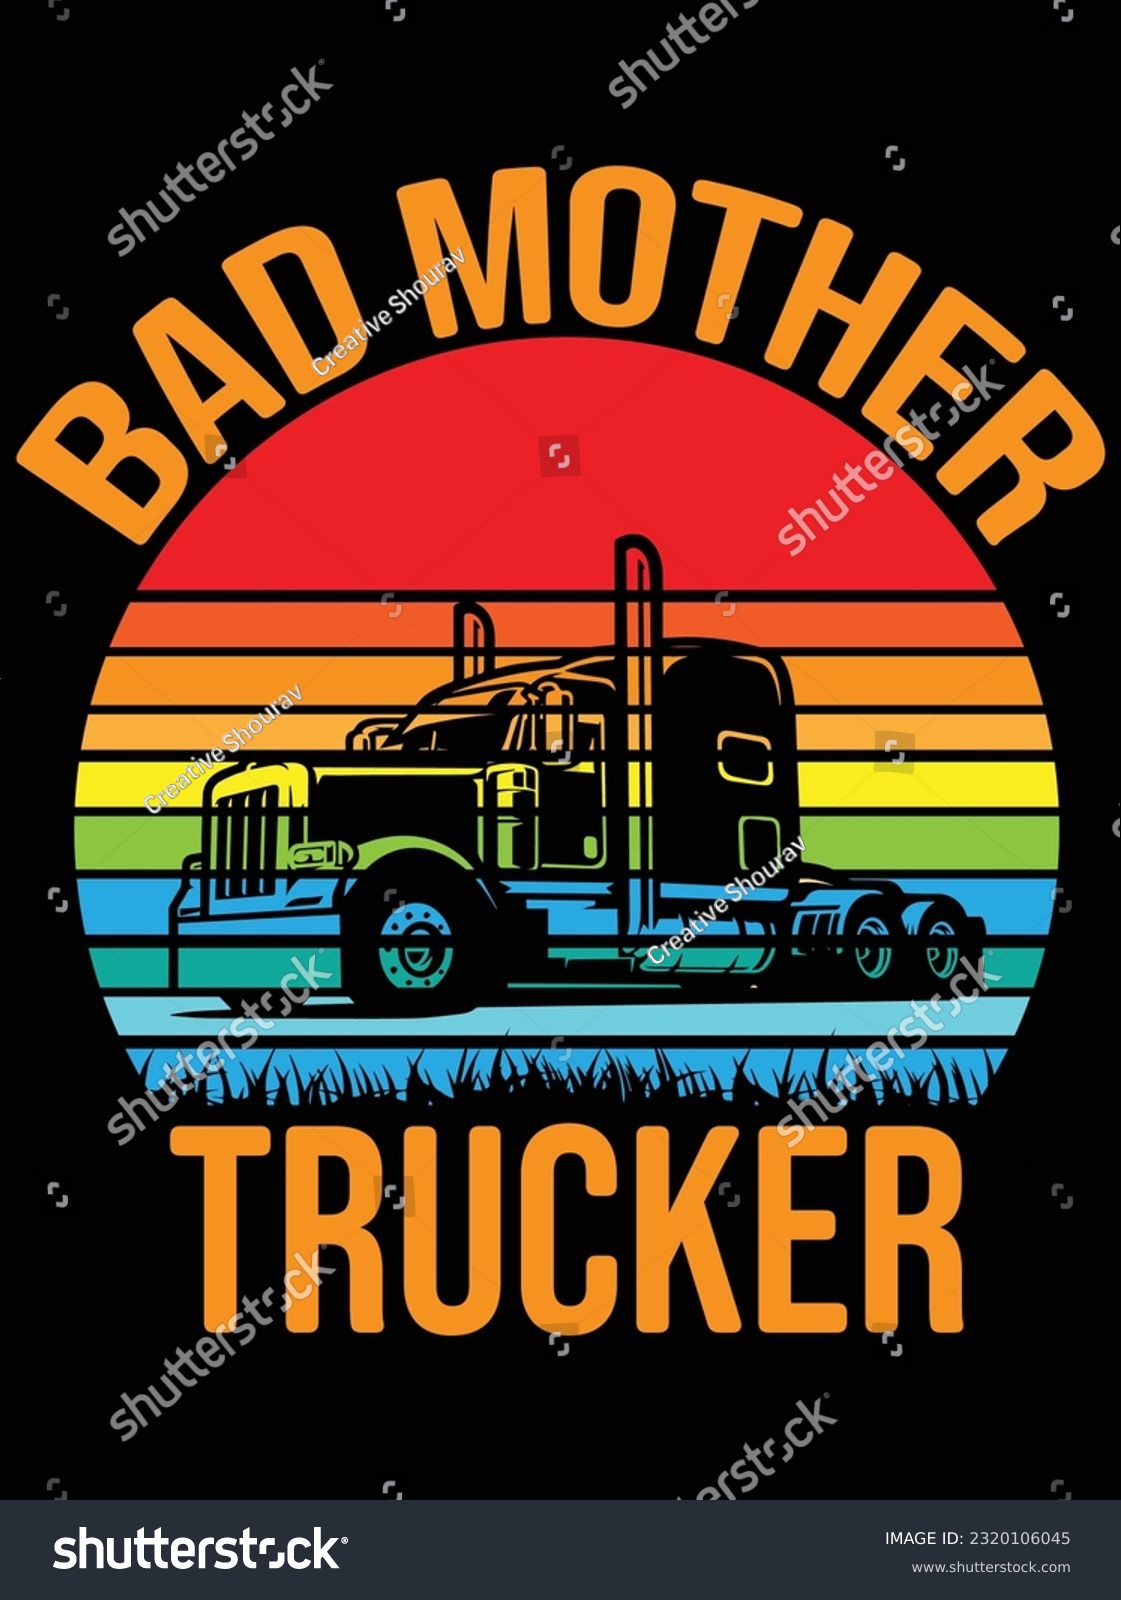 SVG of Bad mother trucker vector art design, eps file. design file for t-shirt. SVG, EPS cuttable design file svg